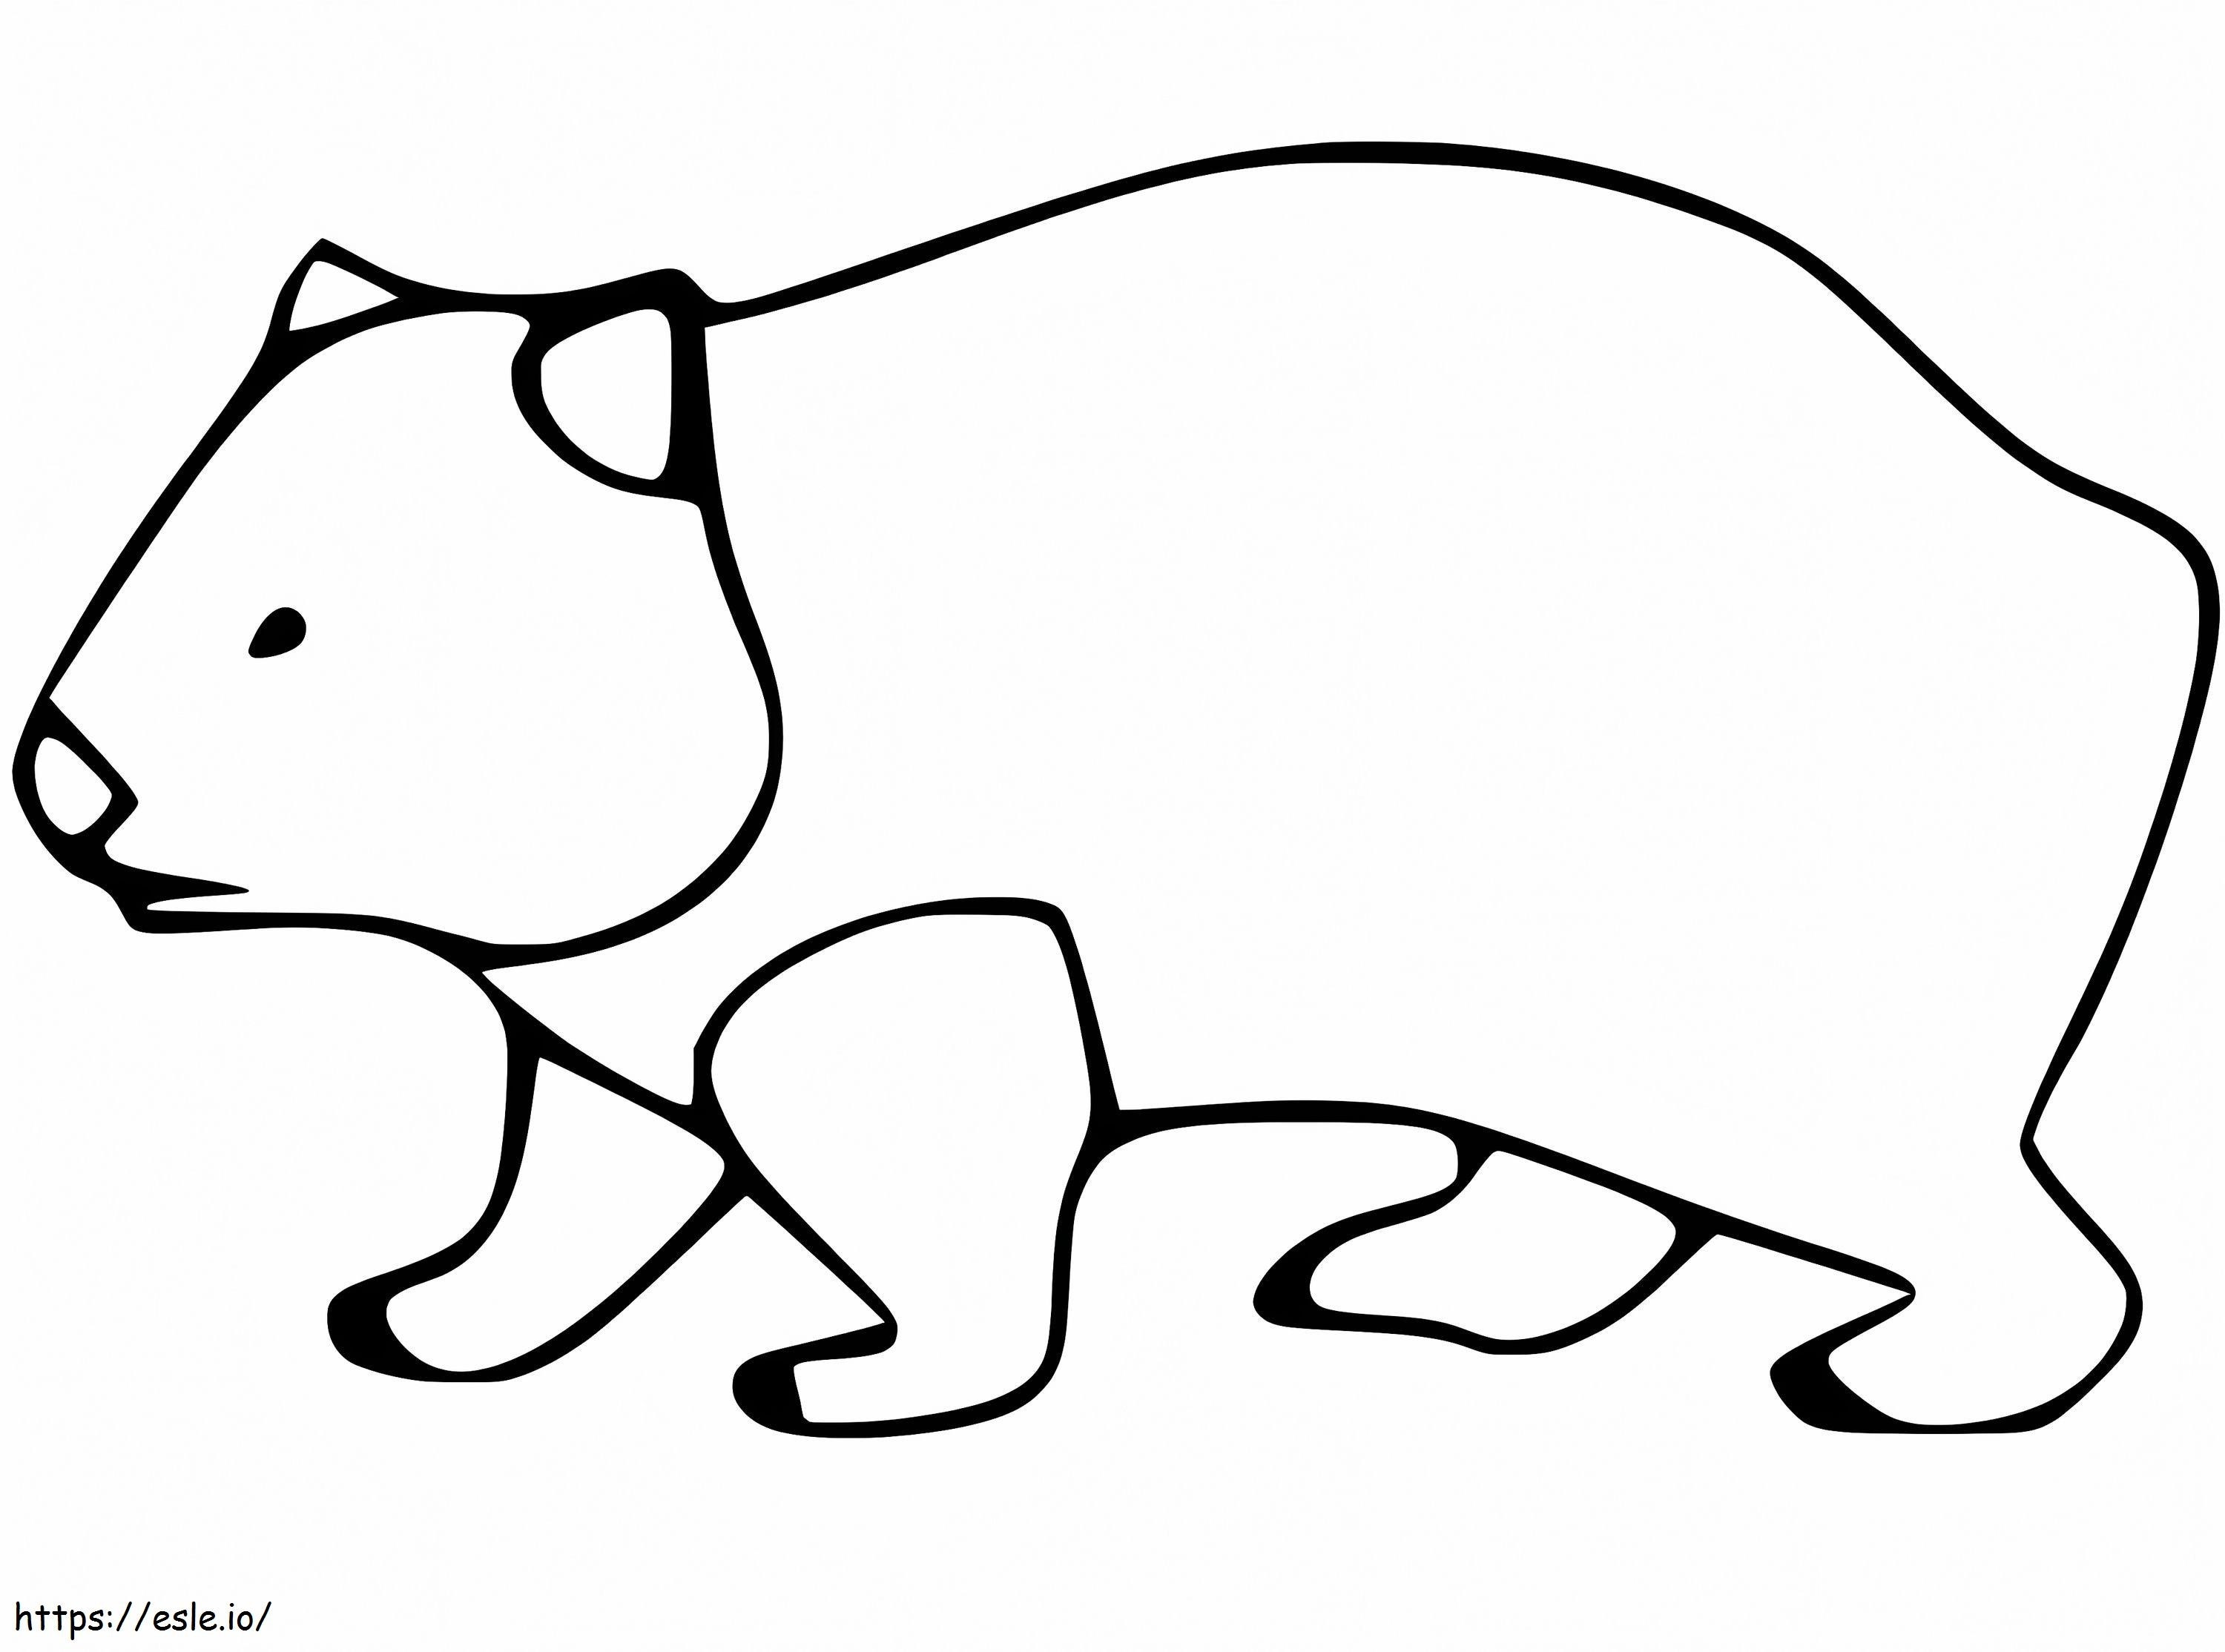 Ücretsiz Yazdırılabilir Wombat boyama